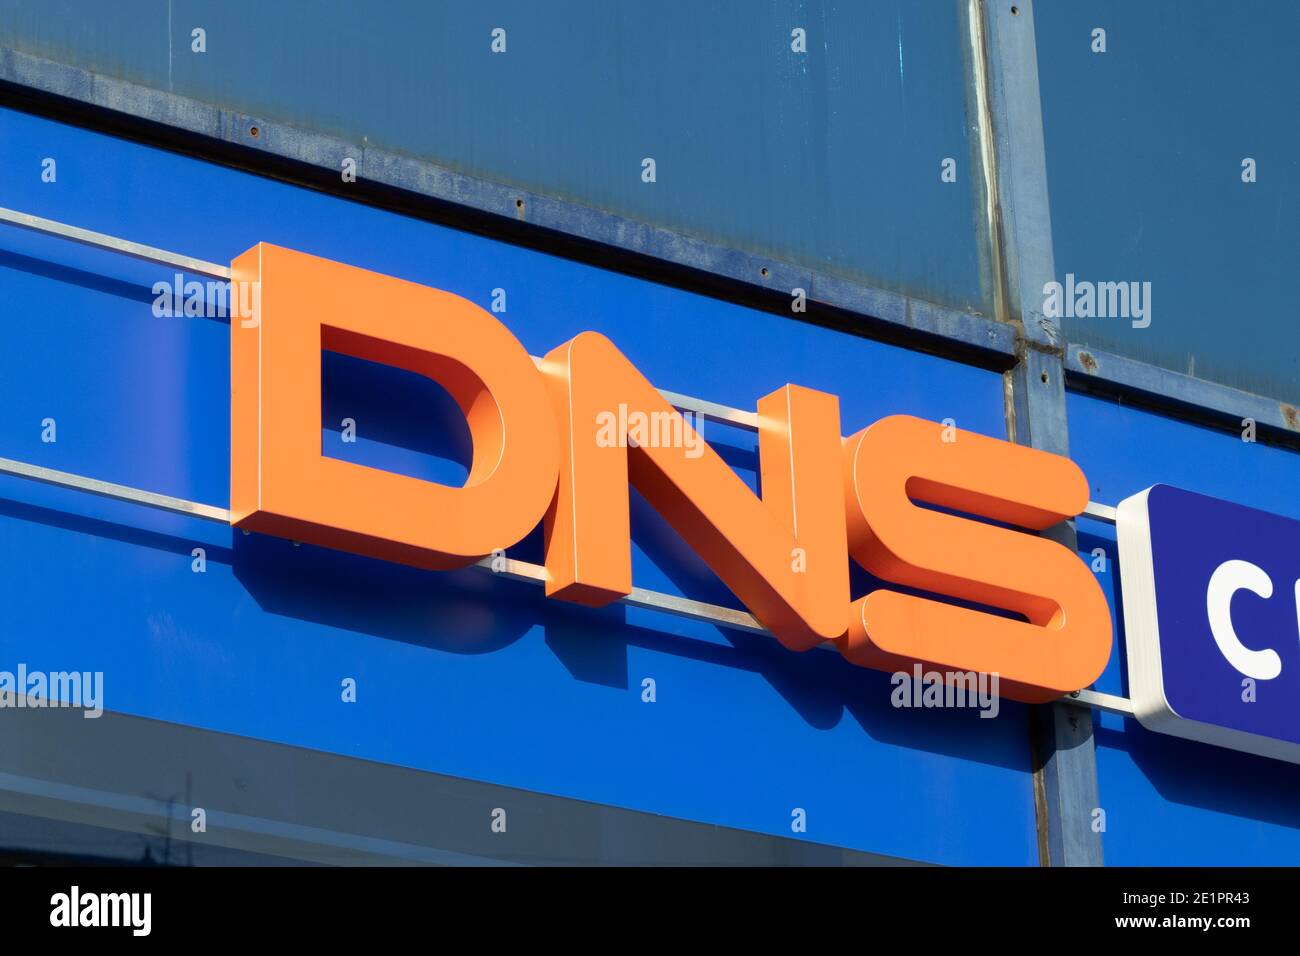 Moscú, Rusia - 5 de diciembre de 2020: Primer plano del logotipo de la tienda DNS, editorial ilustrativa. Foto de stock